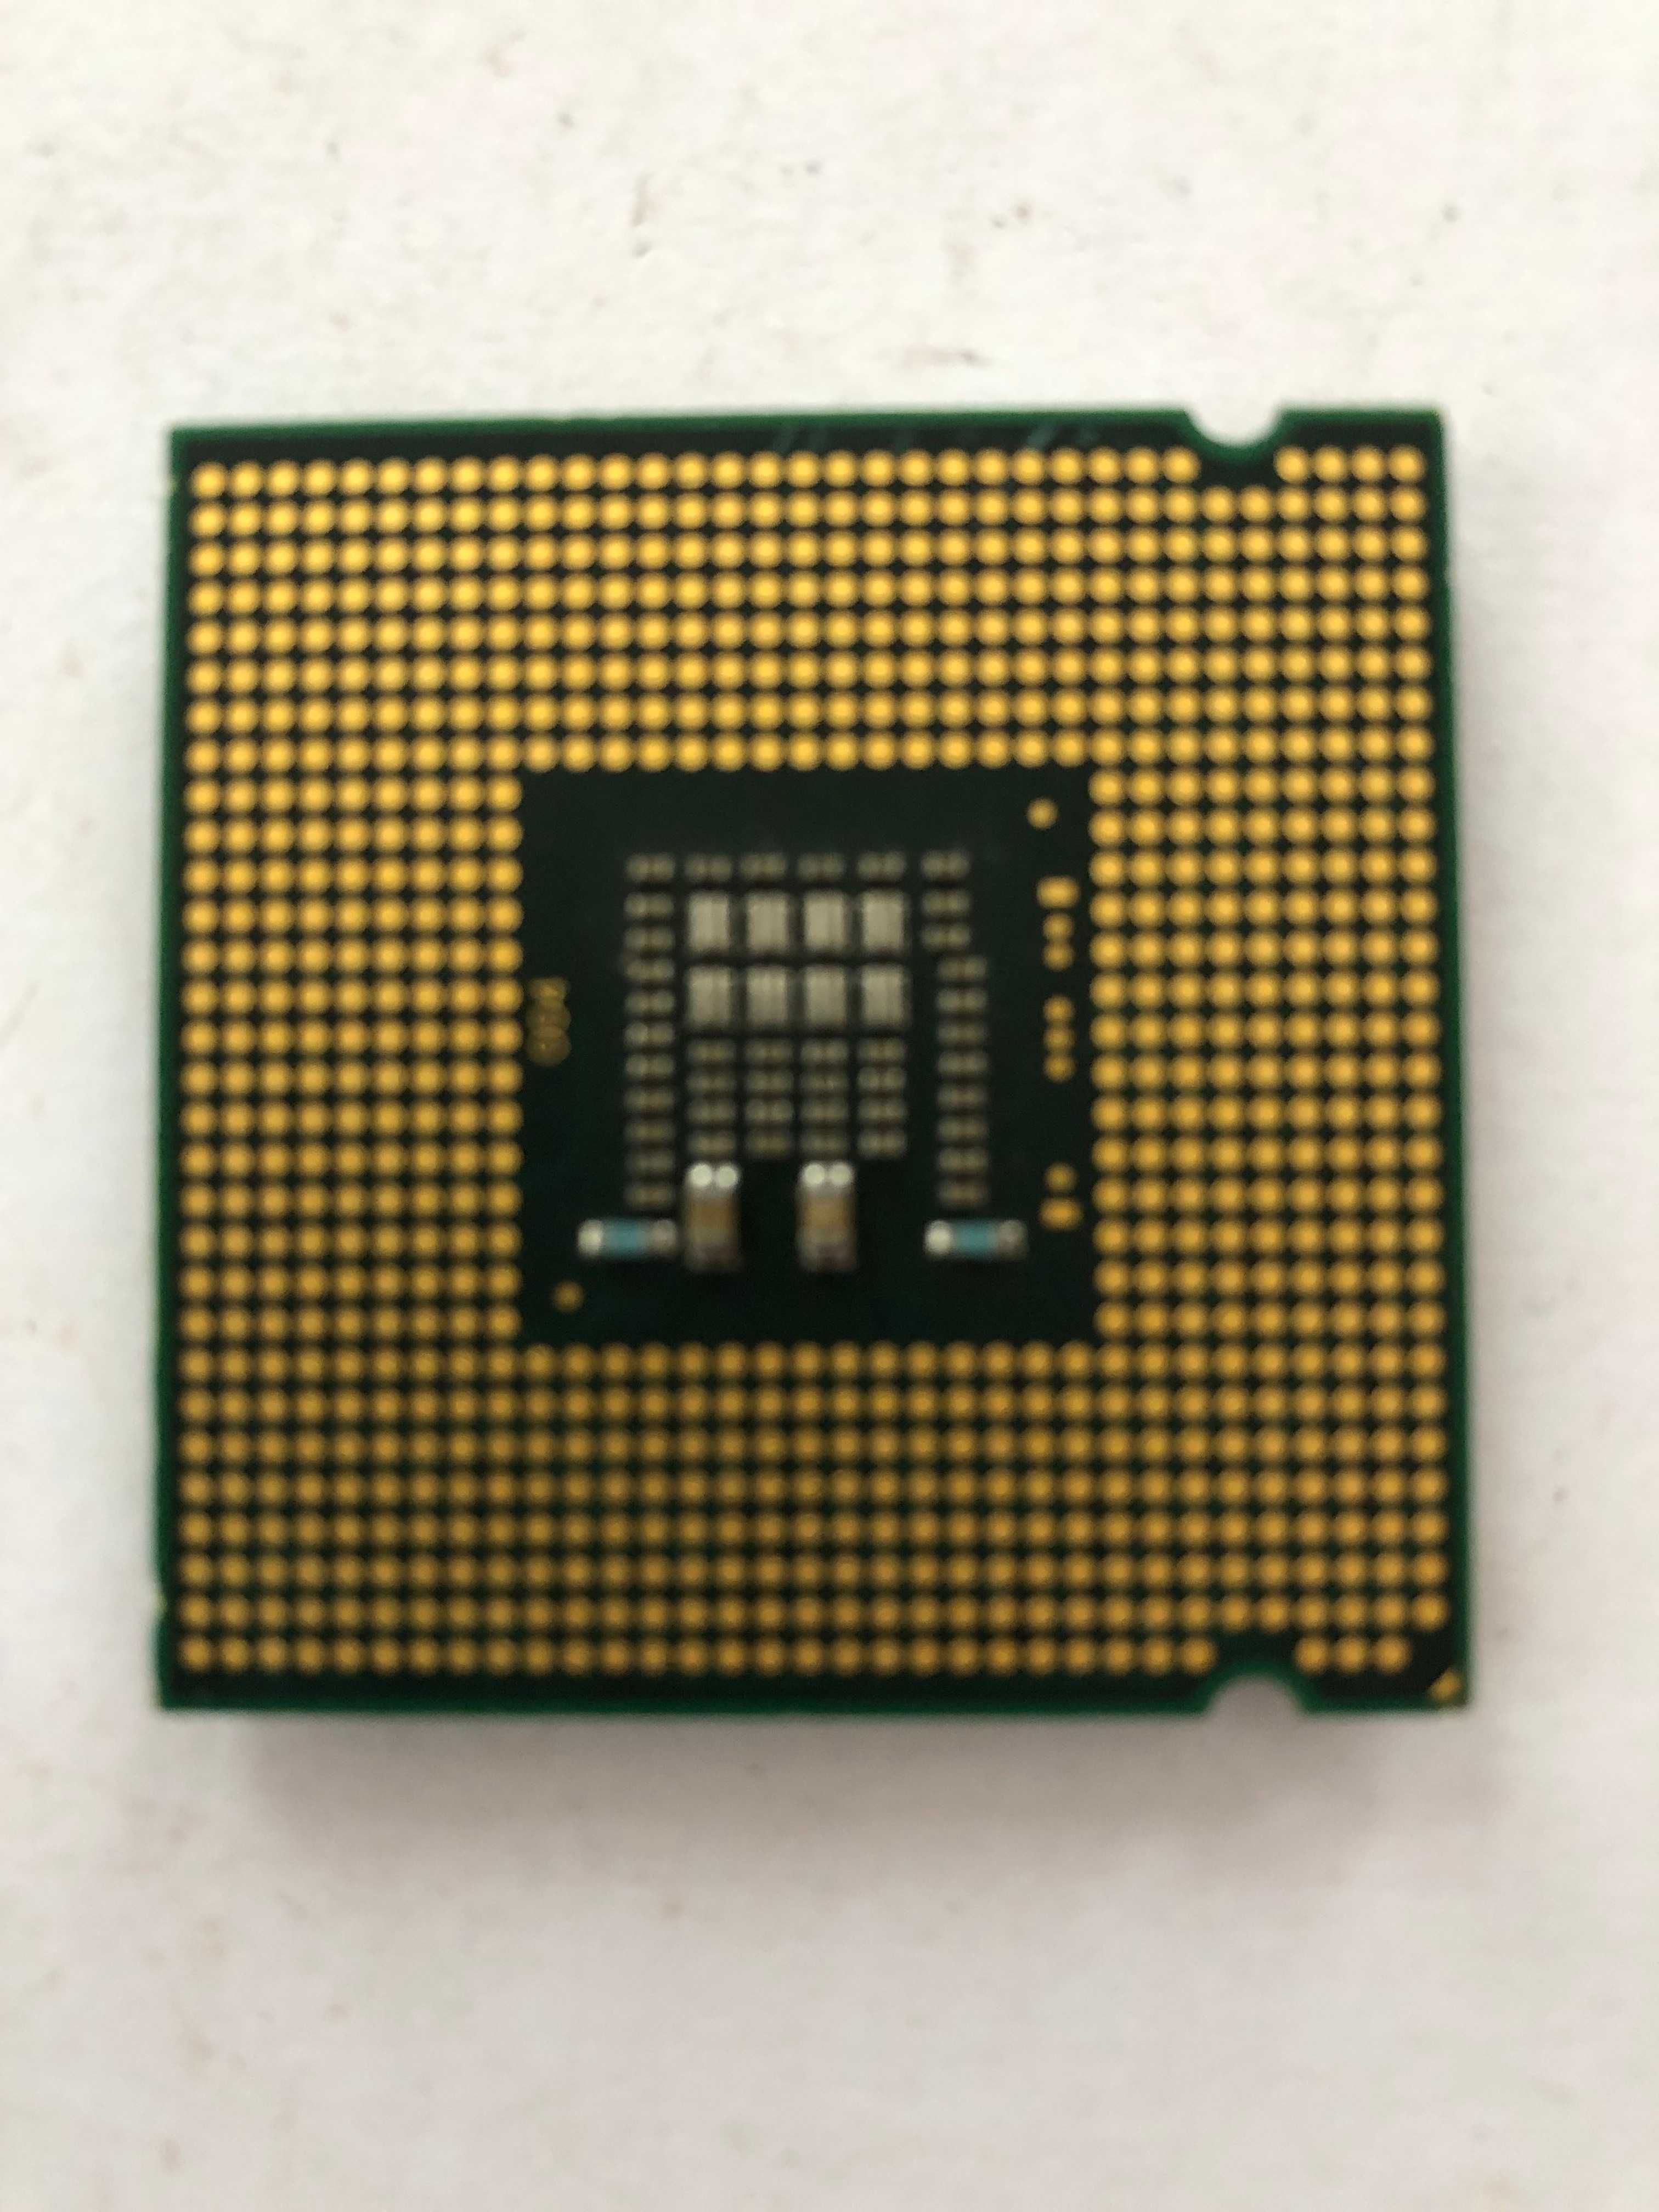 Procesor Intel Pentium 06 E5700 3,0GHz/2M/800/06